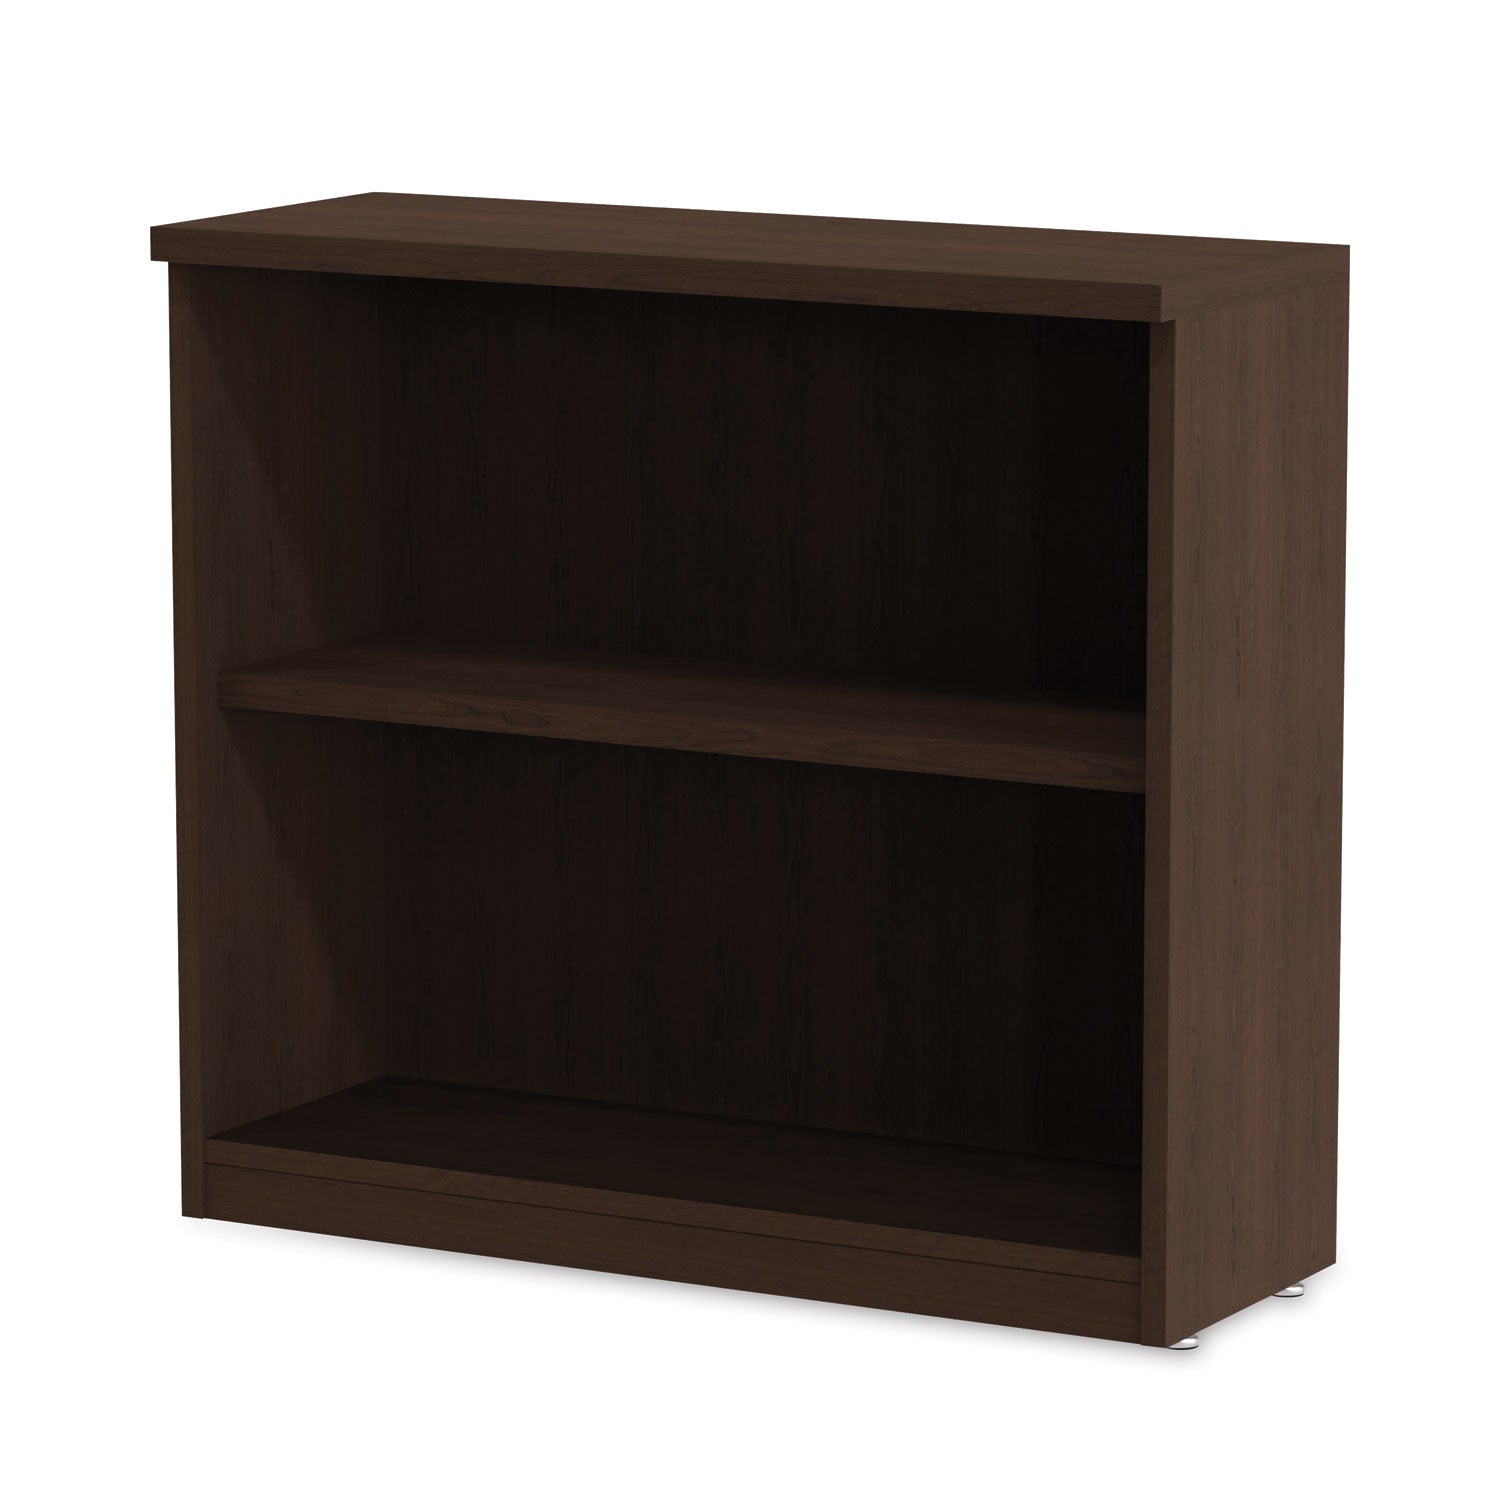 alera-valencia-series-bookcase-two-shelf-3175w-x-14d-x-295h-espresso_aleva633032es - 6